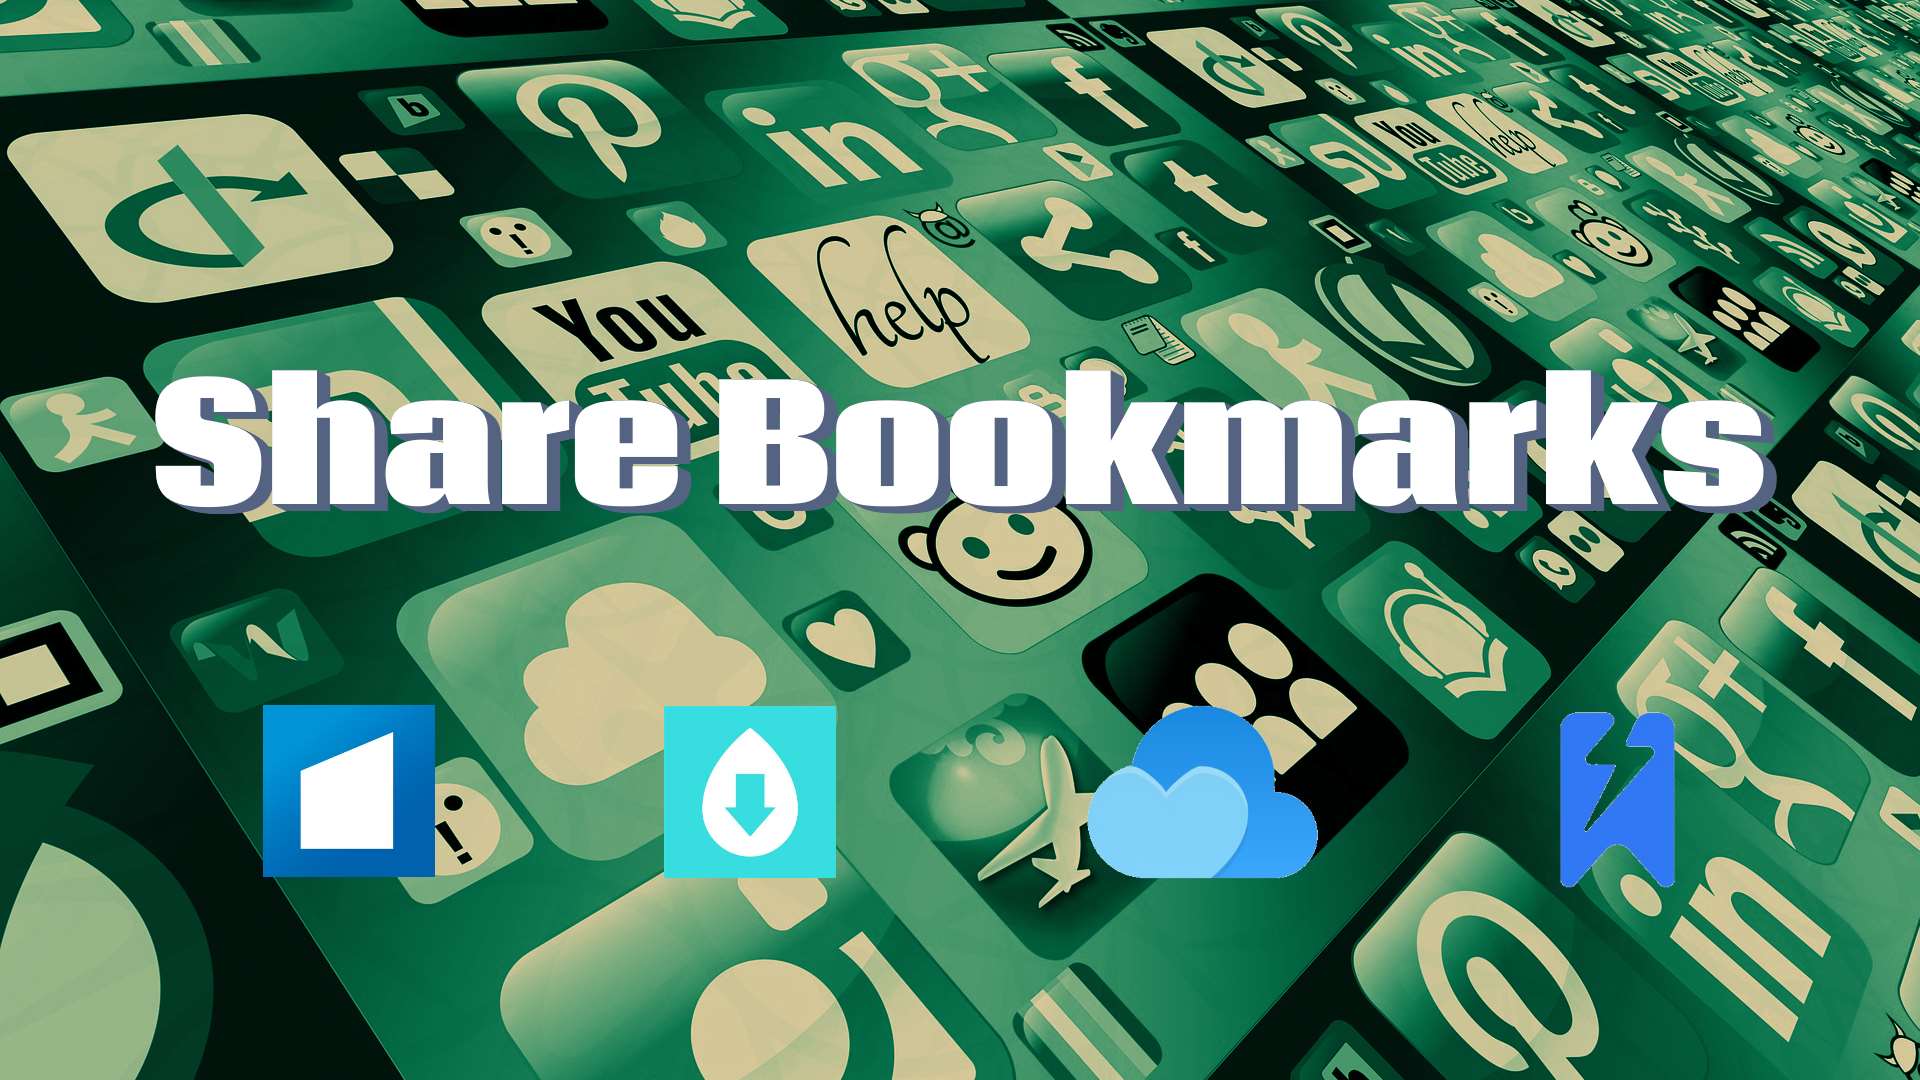 Bookmark Sharing Guide - Dropmark vs Raindrop vs Start.me vs GGather